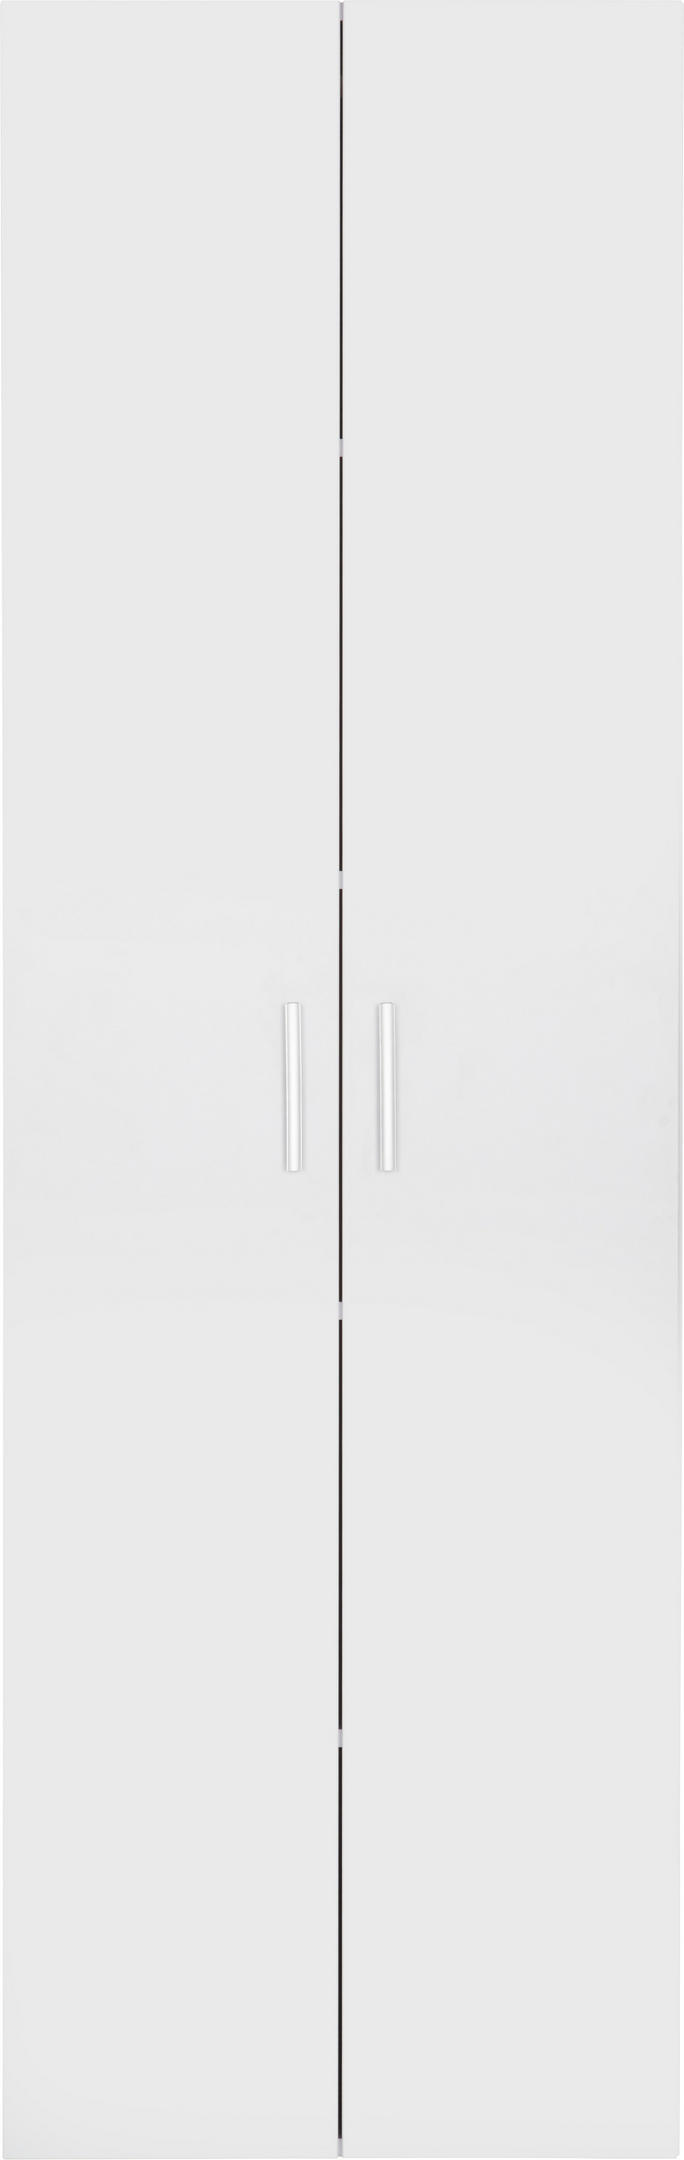 MEHRZWECKSCHRANK 60/192/33,6 cm  - Silberfarben/Weiß, Design, Holzwerkstoff (60/192/33,6cm) - Carryhome